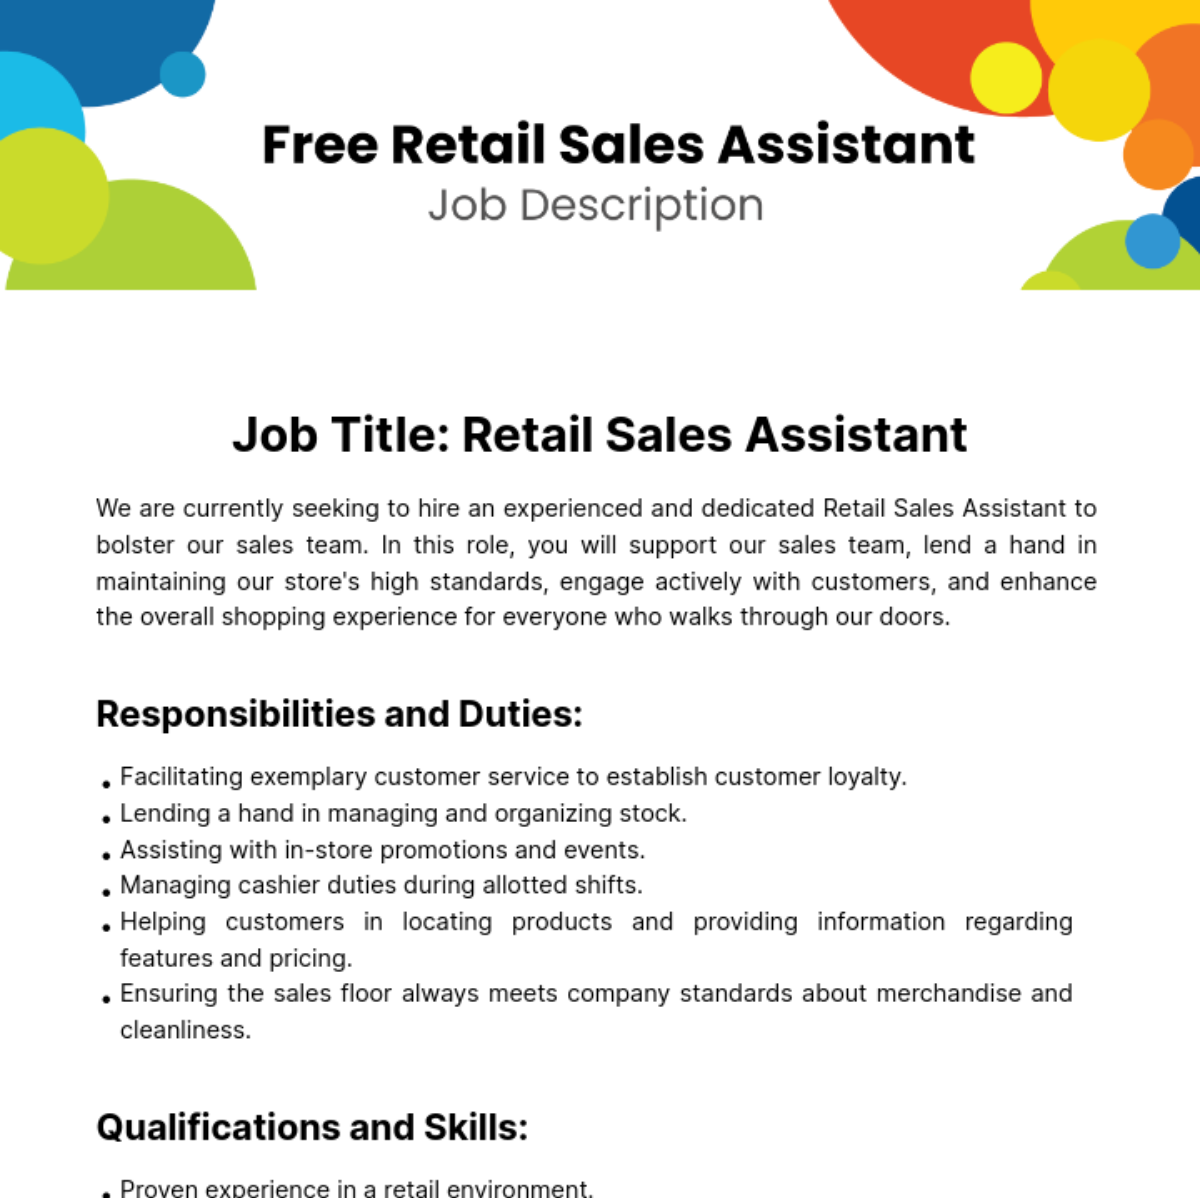 Free Retail Sales Asistant Job Description Template